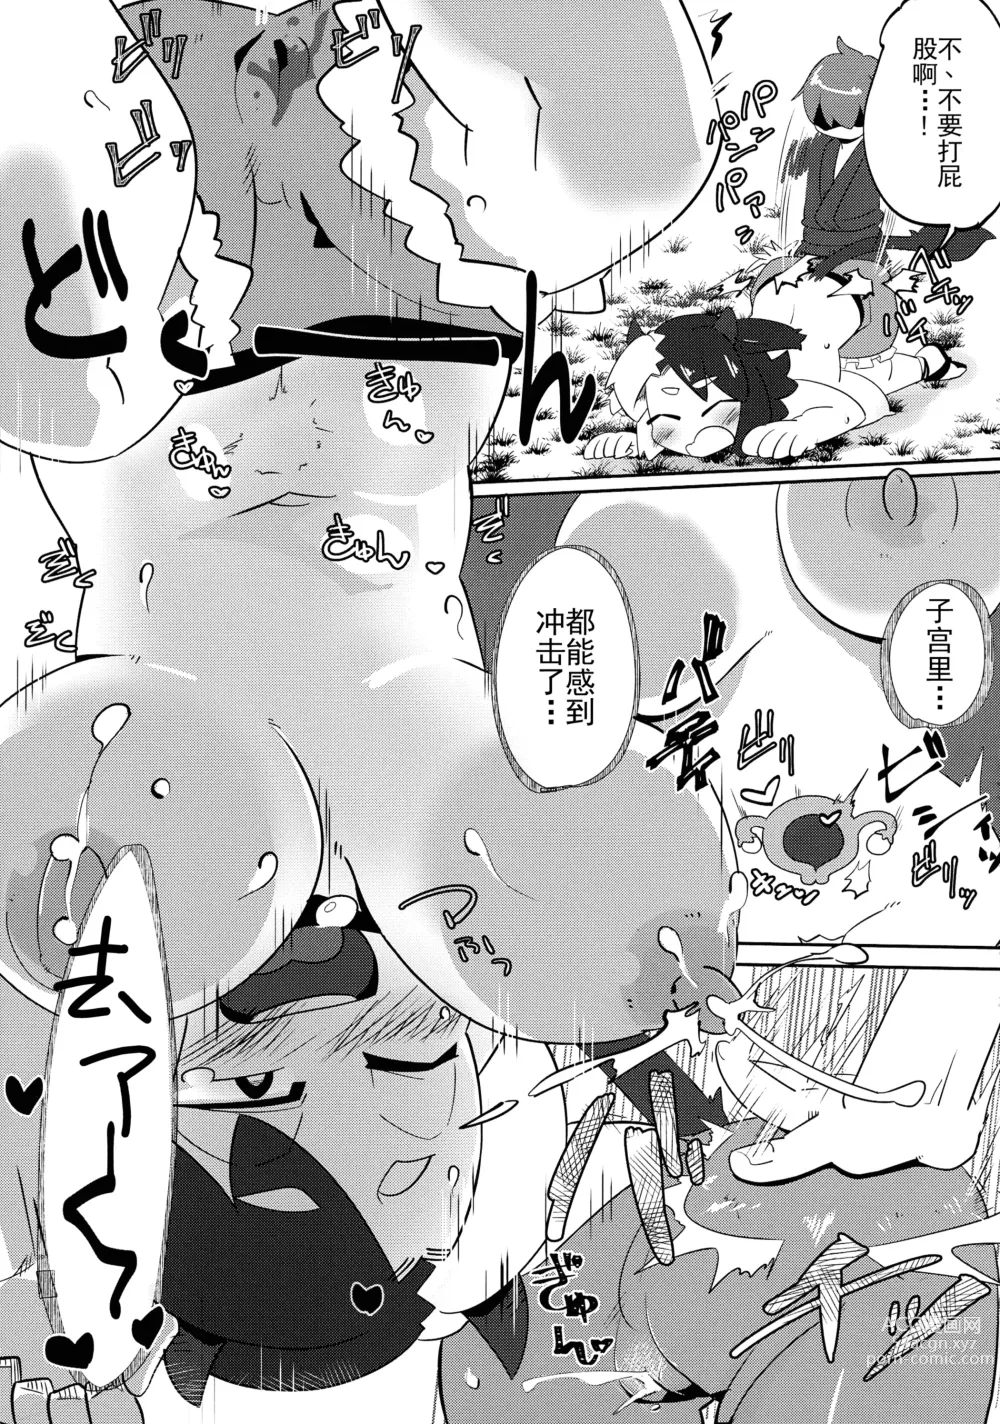 Page 10 of doujinshi Ushizaki-san VS Otokonoko